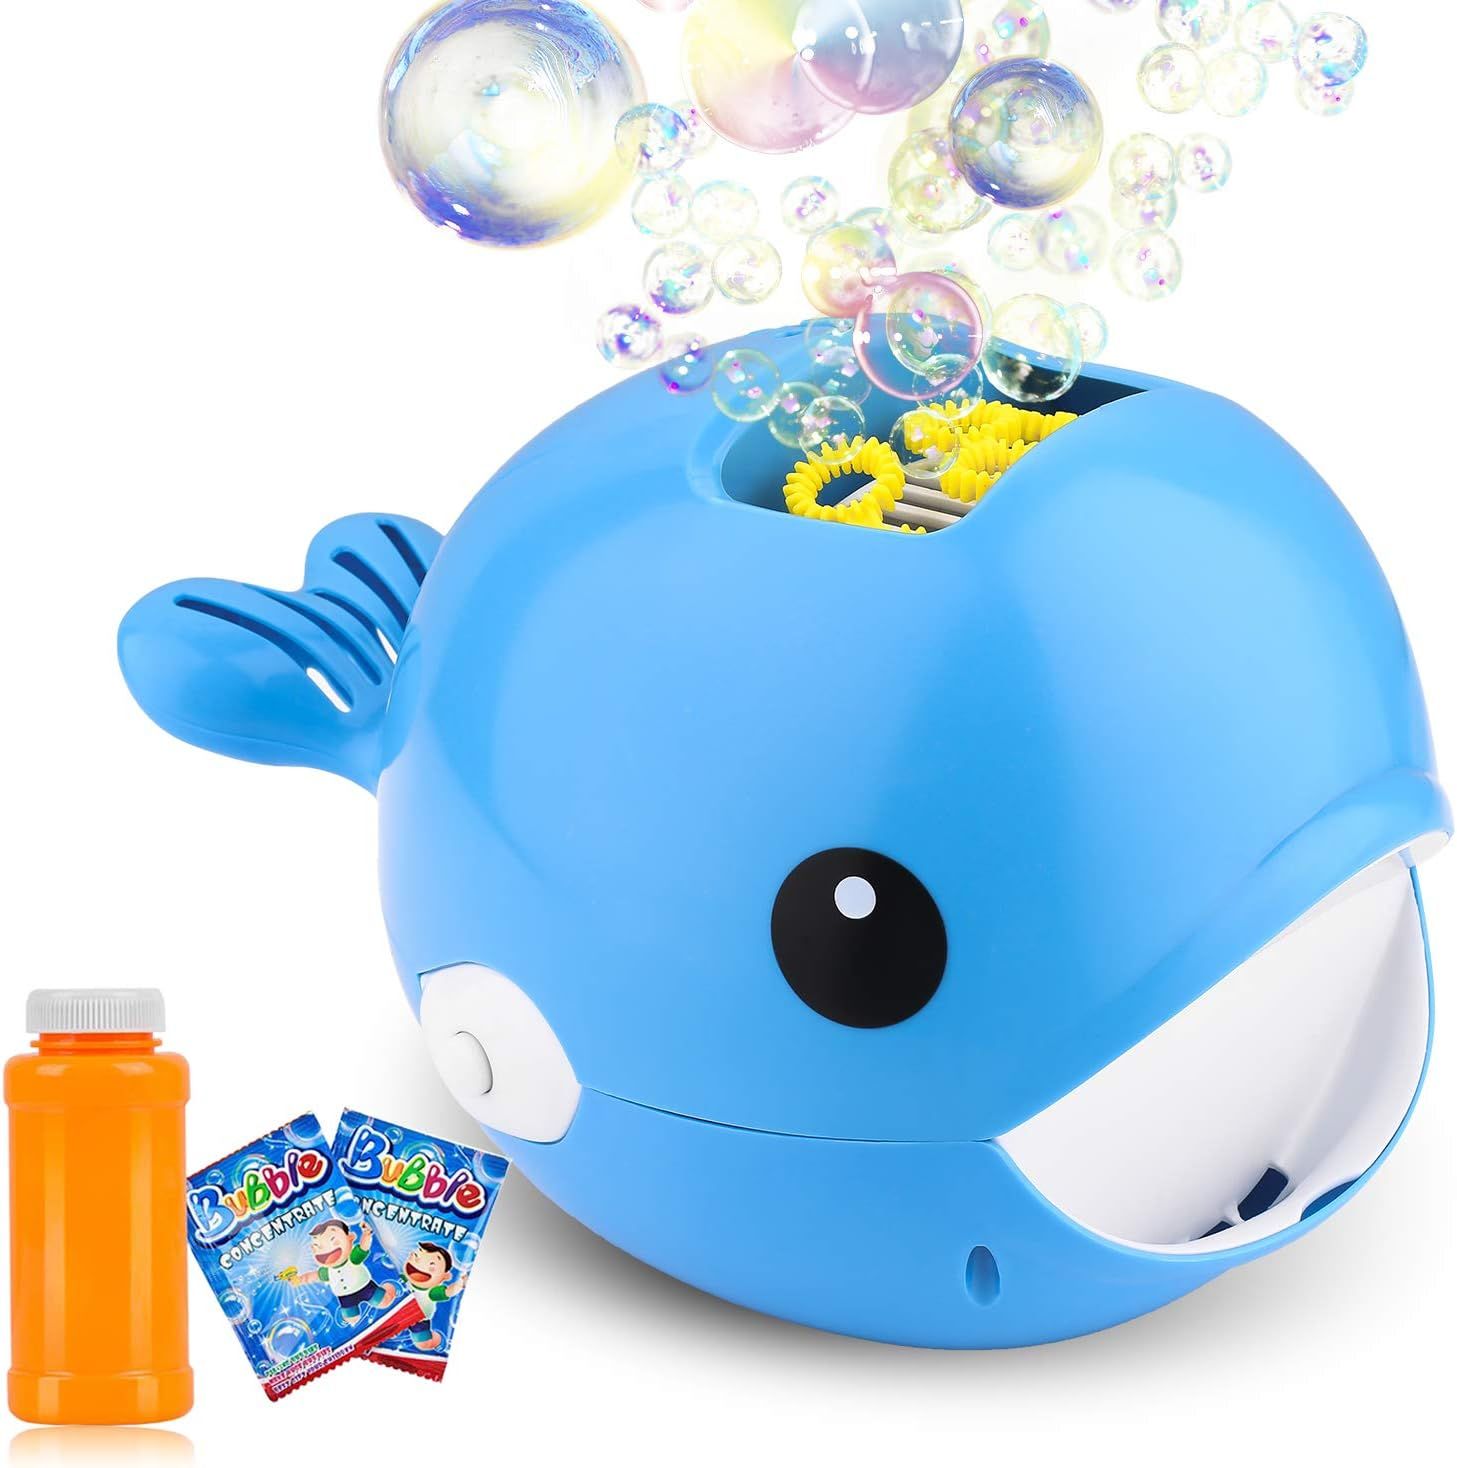 Biulotter Bubble Machine, Automatic Bubble Blower, Bubble Maker More Than 2000 Per Minute Bubble ... | Amazon (US)